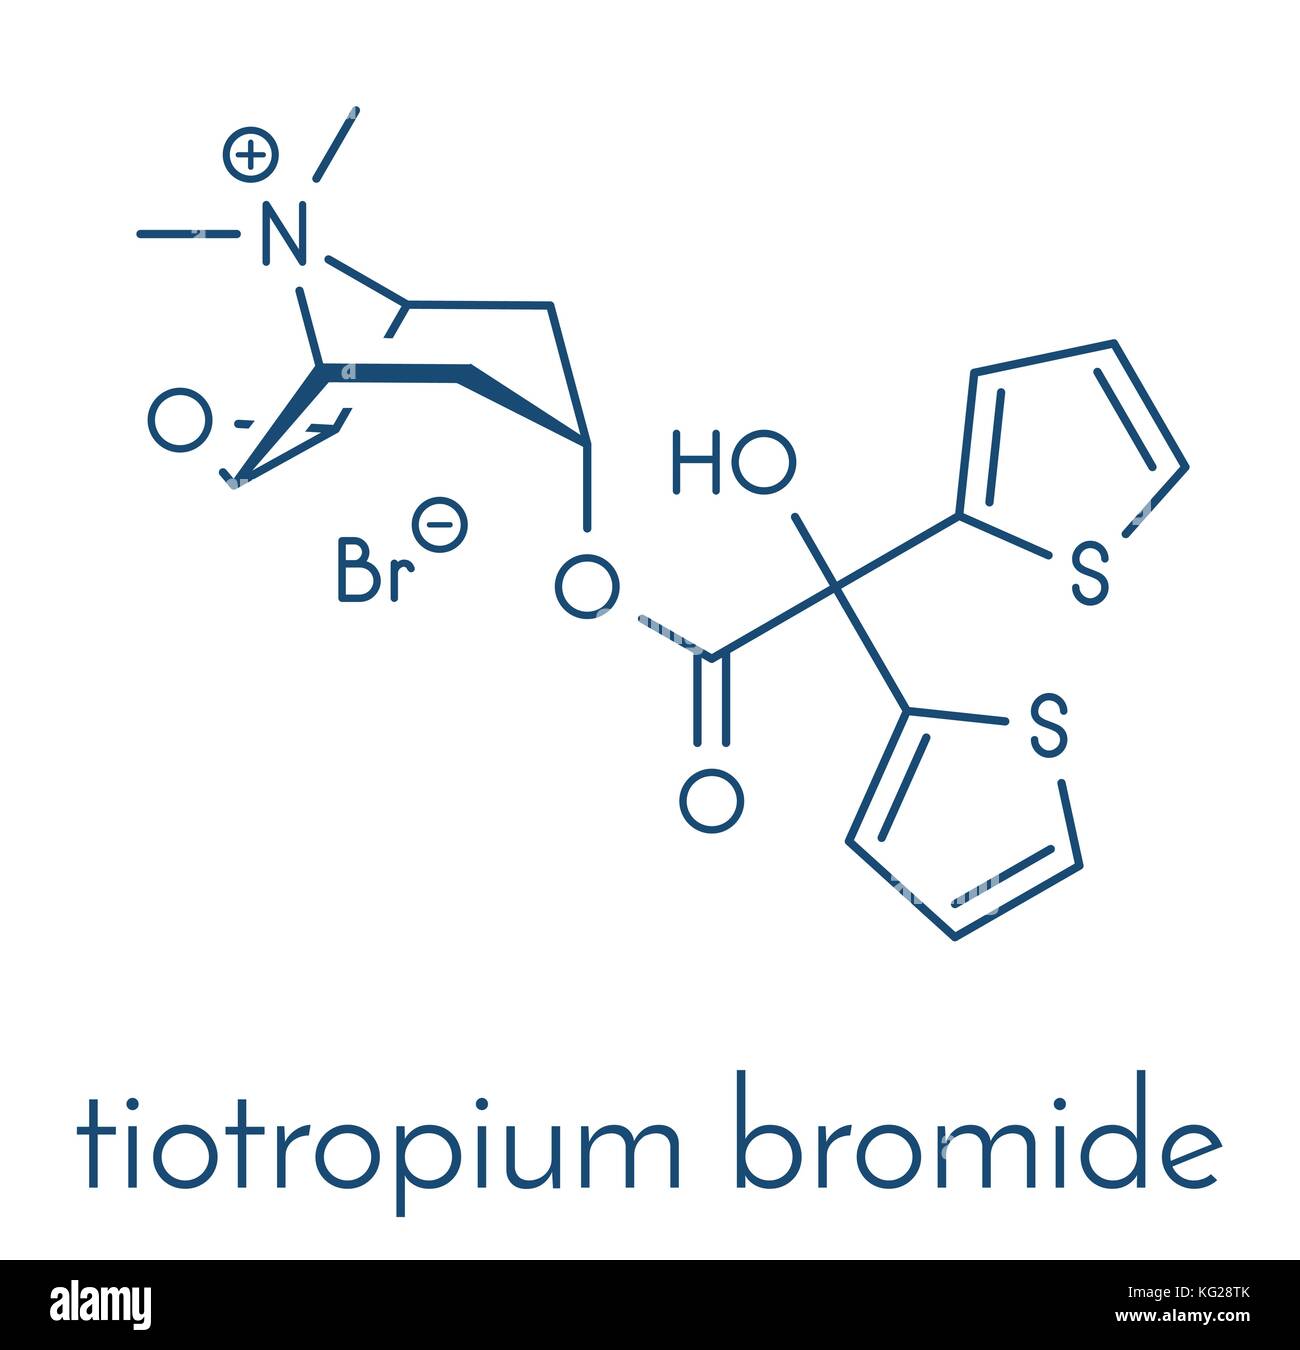 Bromure de tiotropium la bronchopneumopathie chronique obstructive (BPCO) molécule pharmaceutique. formule topologique. Illustration de Vecteur